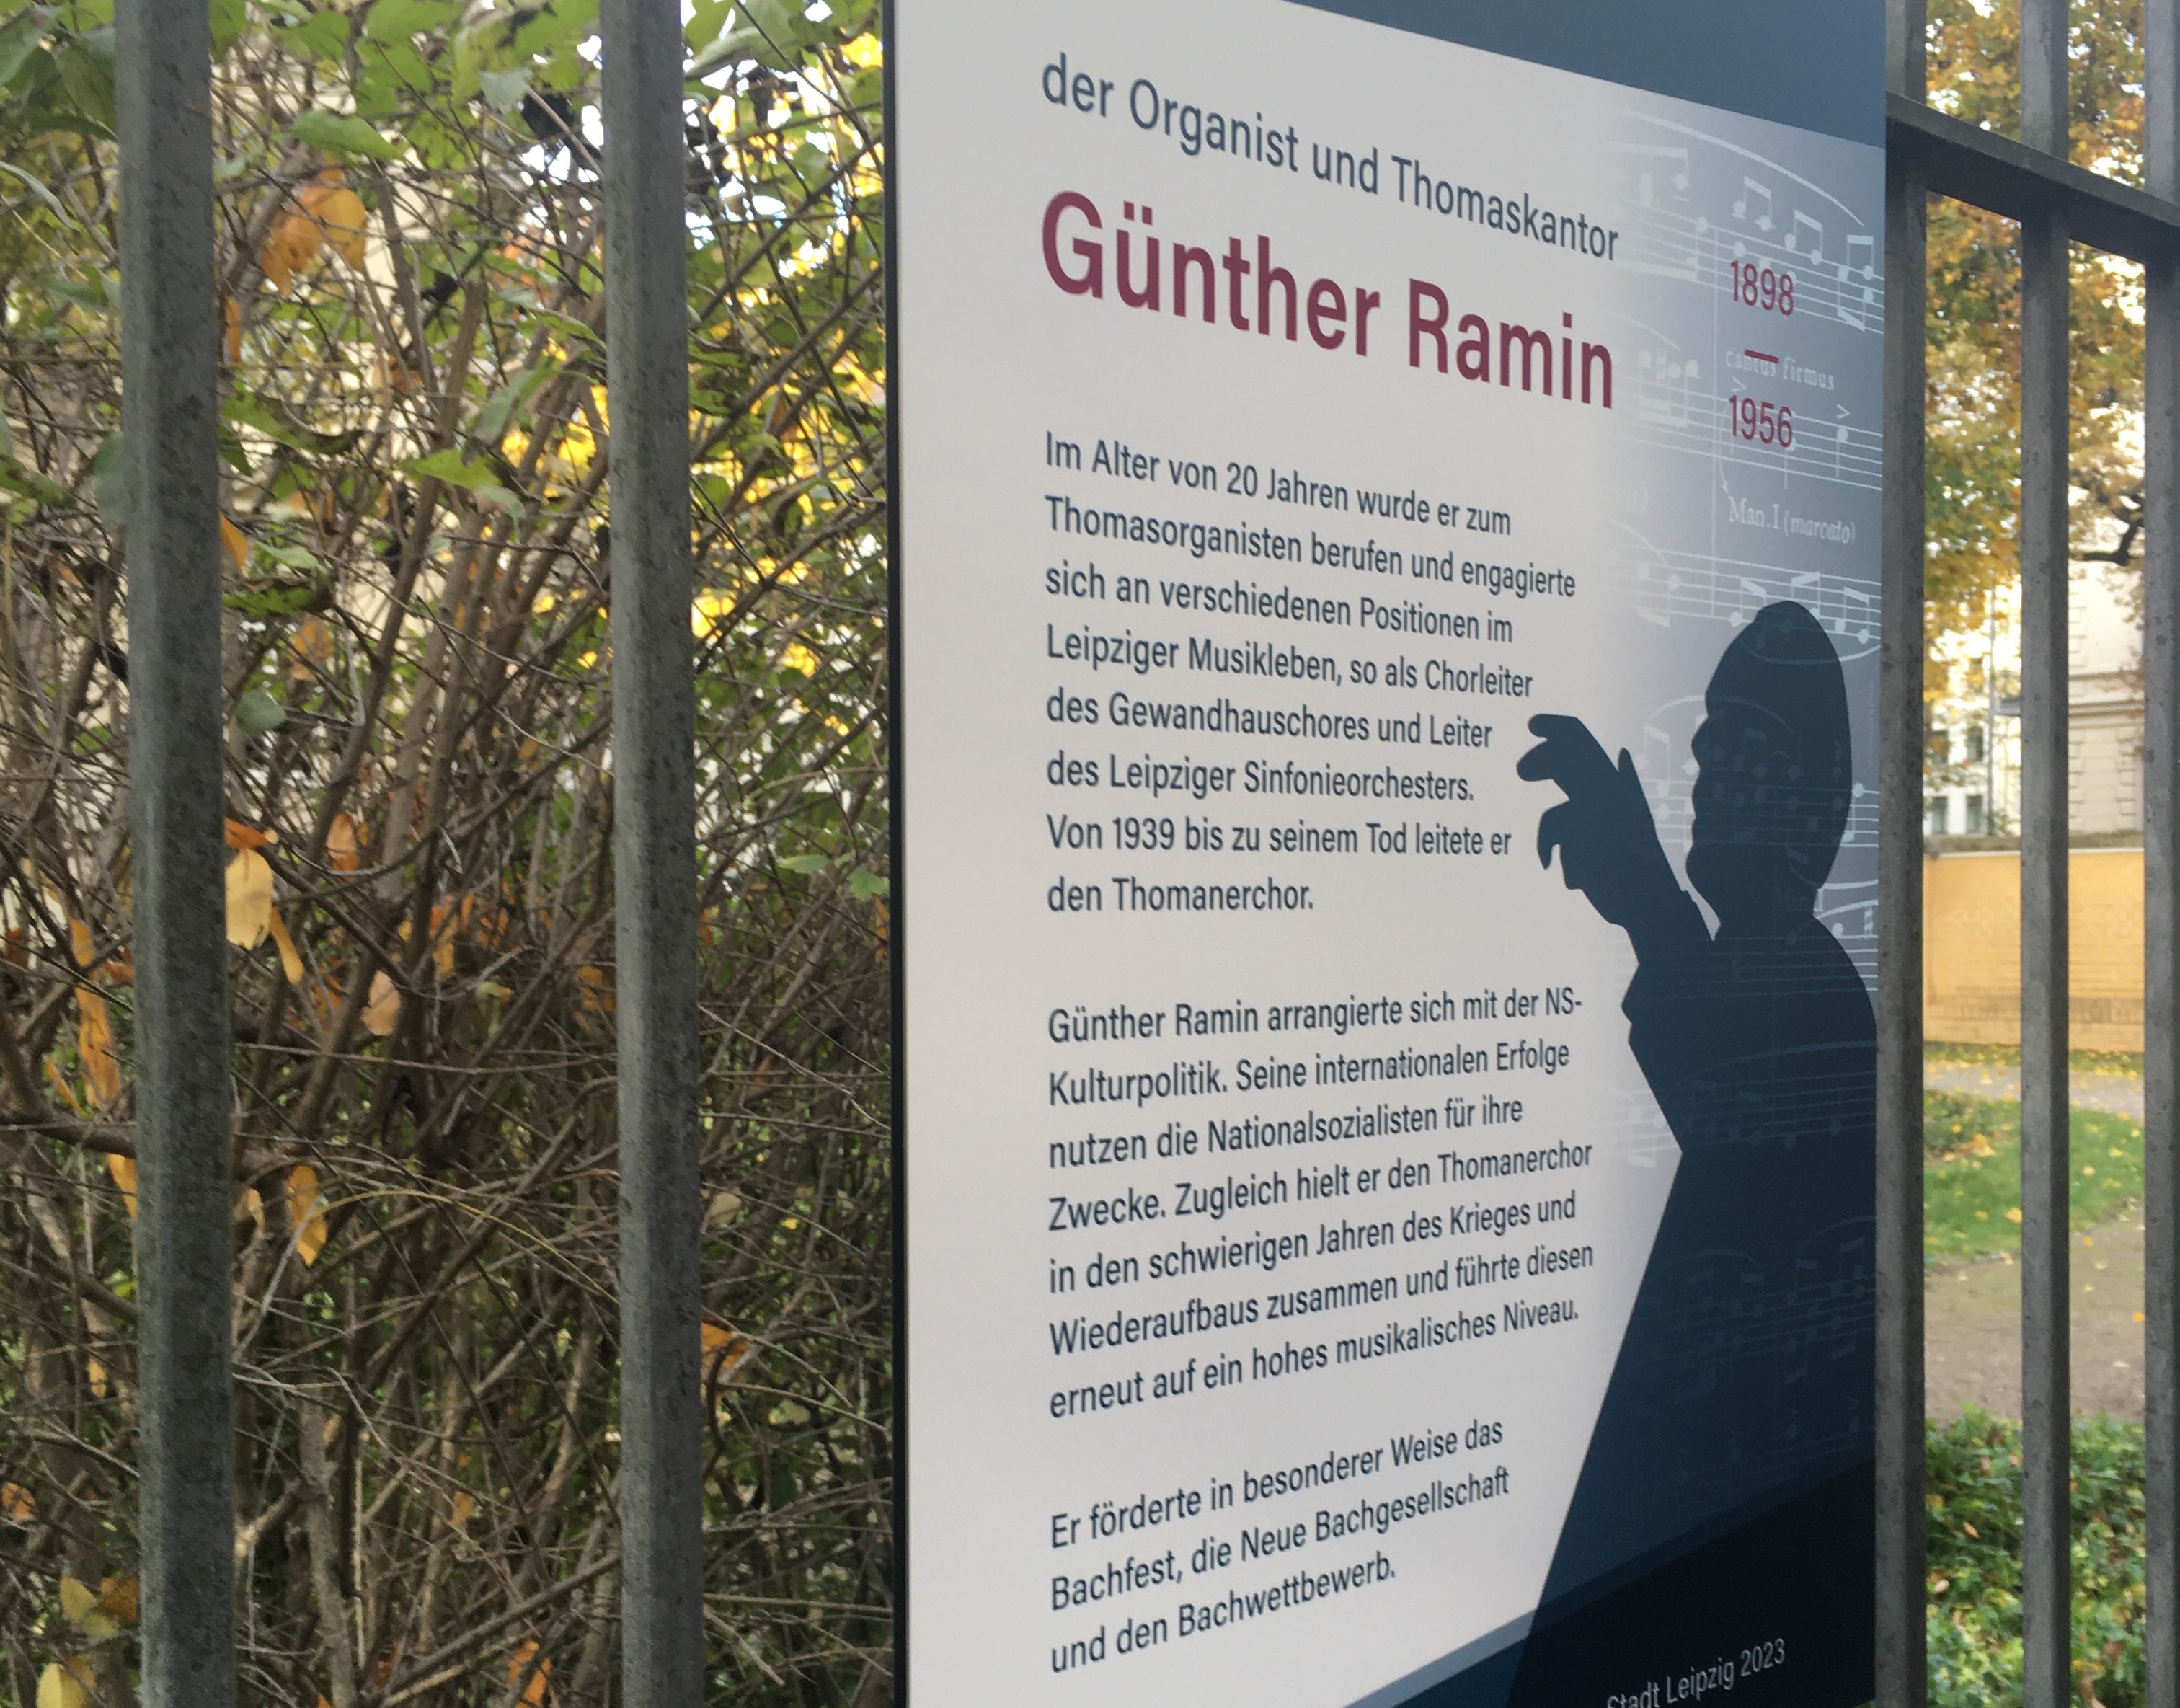   Städtische Amnesie | Wie eine Gedenktafel für den ehemaligen Thomaskantor Günther Ramin städtische Lücken des Erinnerns aufzeigt – ein Kommentar  